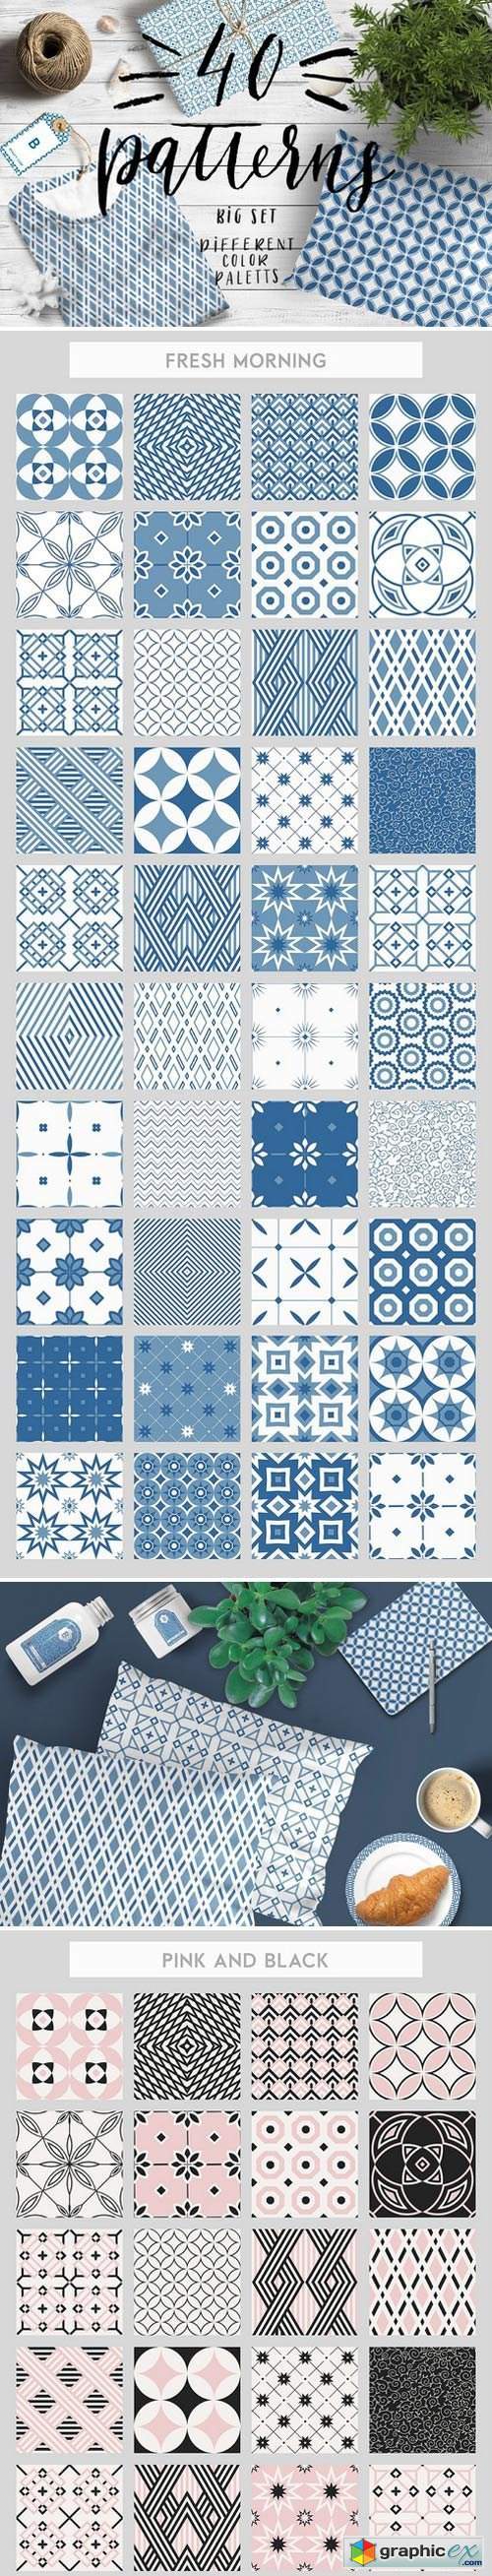 40 seamless patterns set